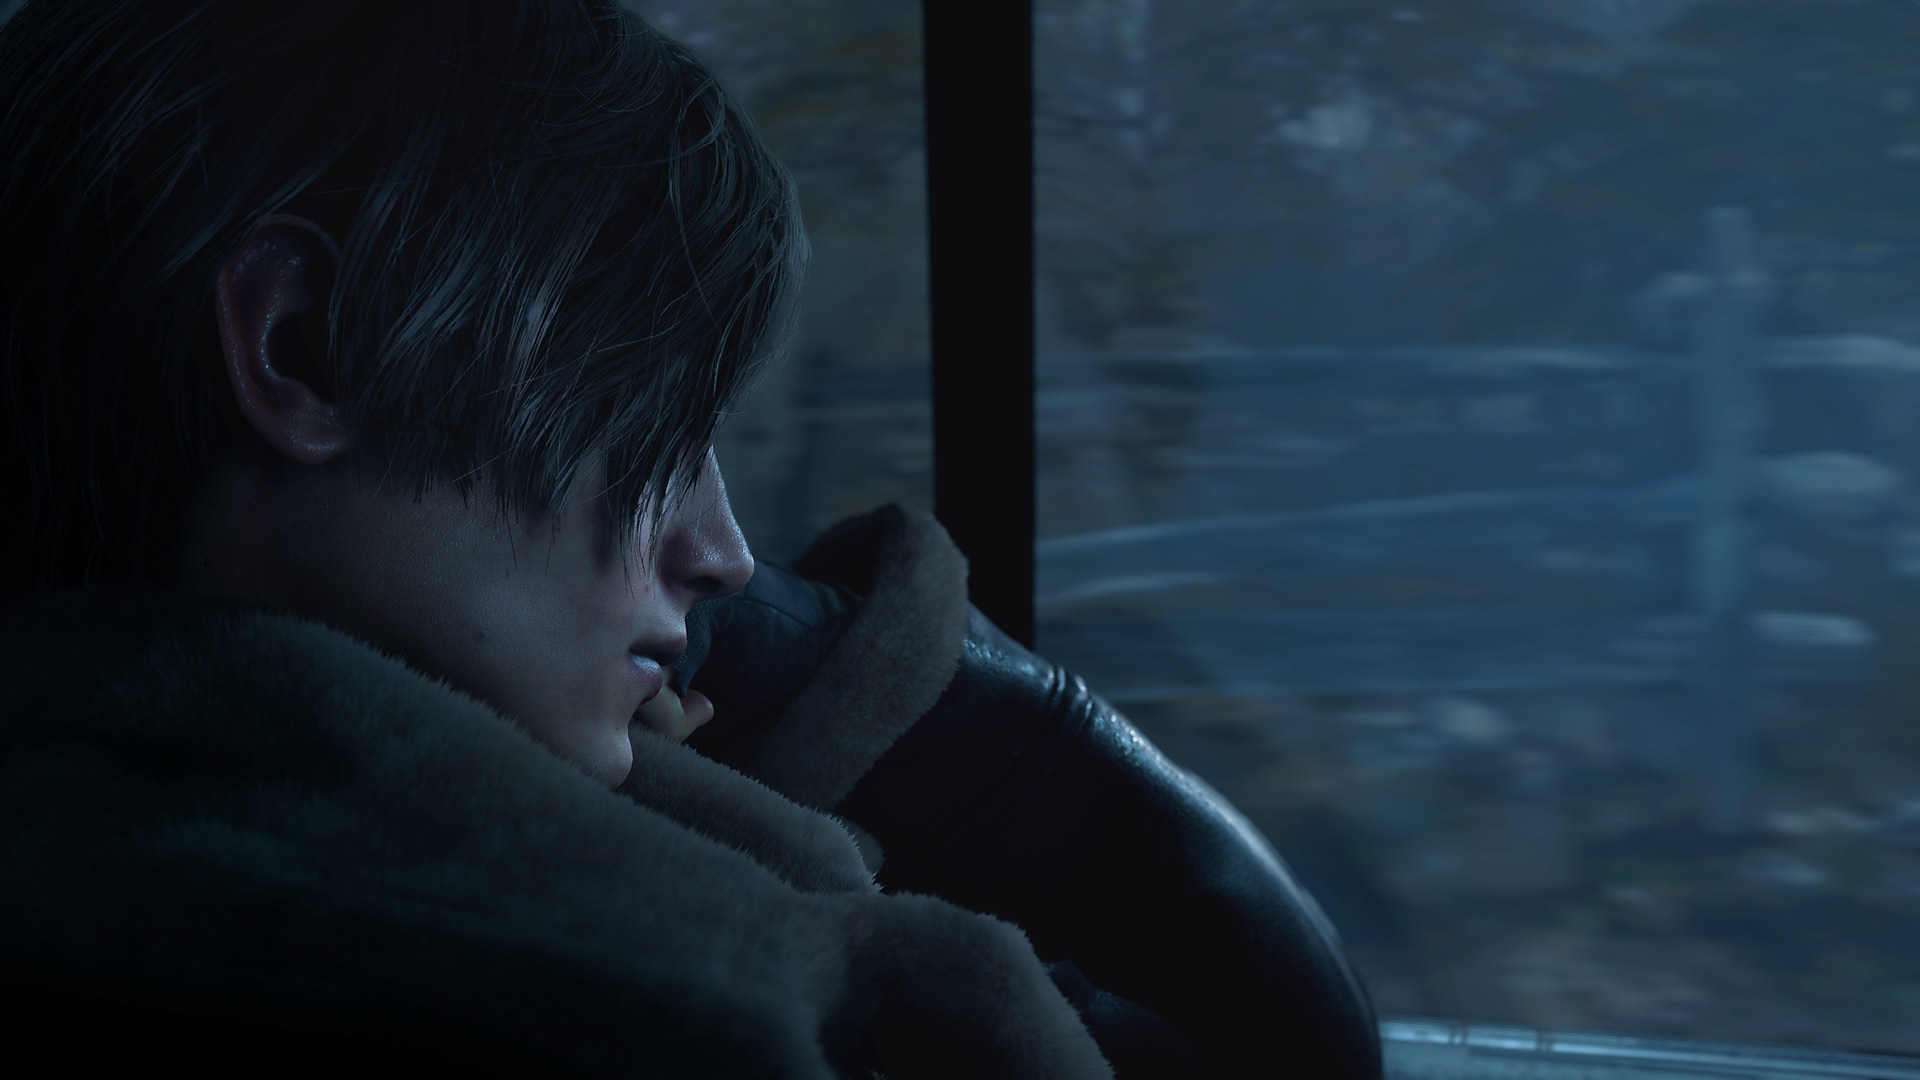 Resident Evil 4 - screenshot met Leon Kennedy die achterin een rijdende auto zit.